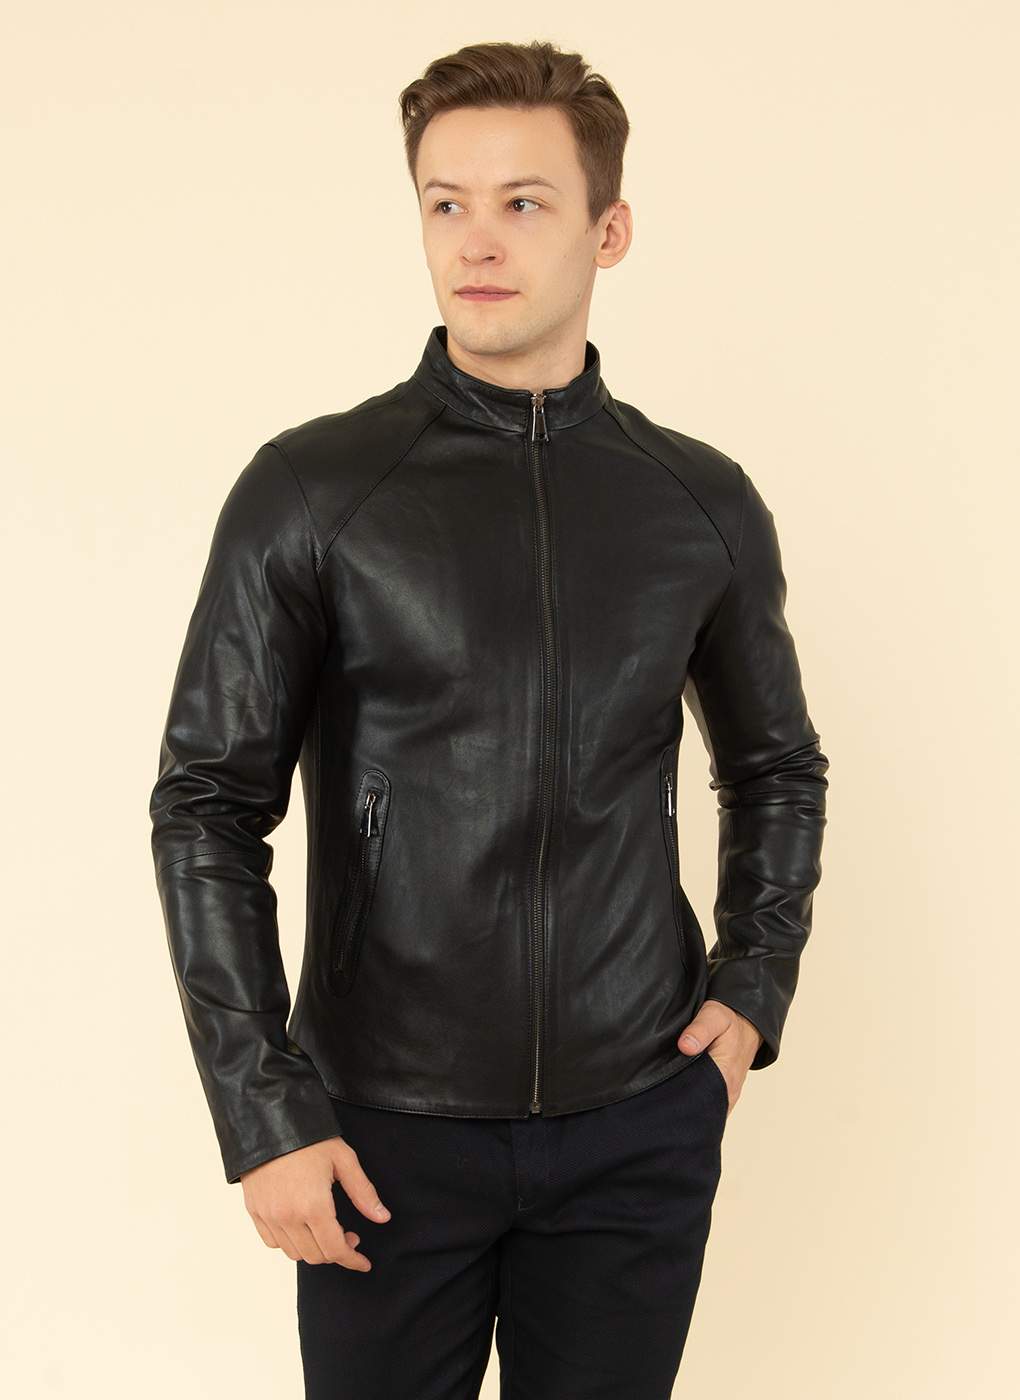 Кожаная куртка мужская Каляев 55057 черная 50 RU